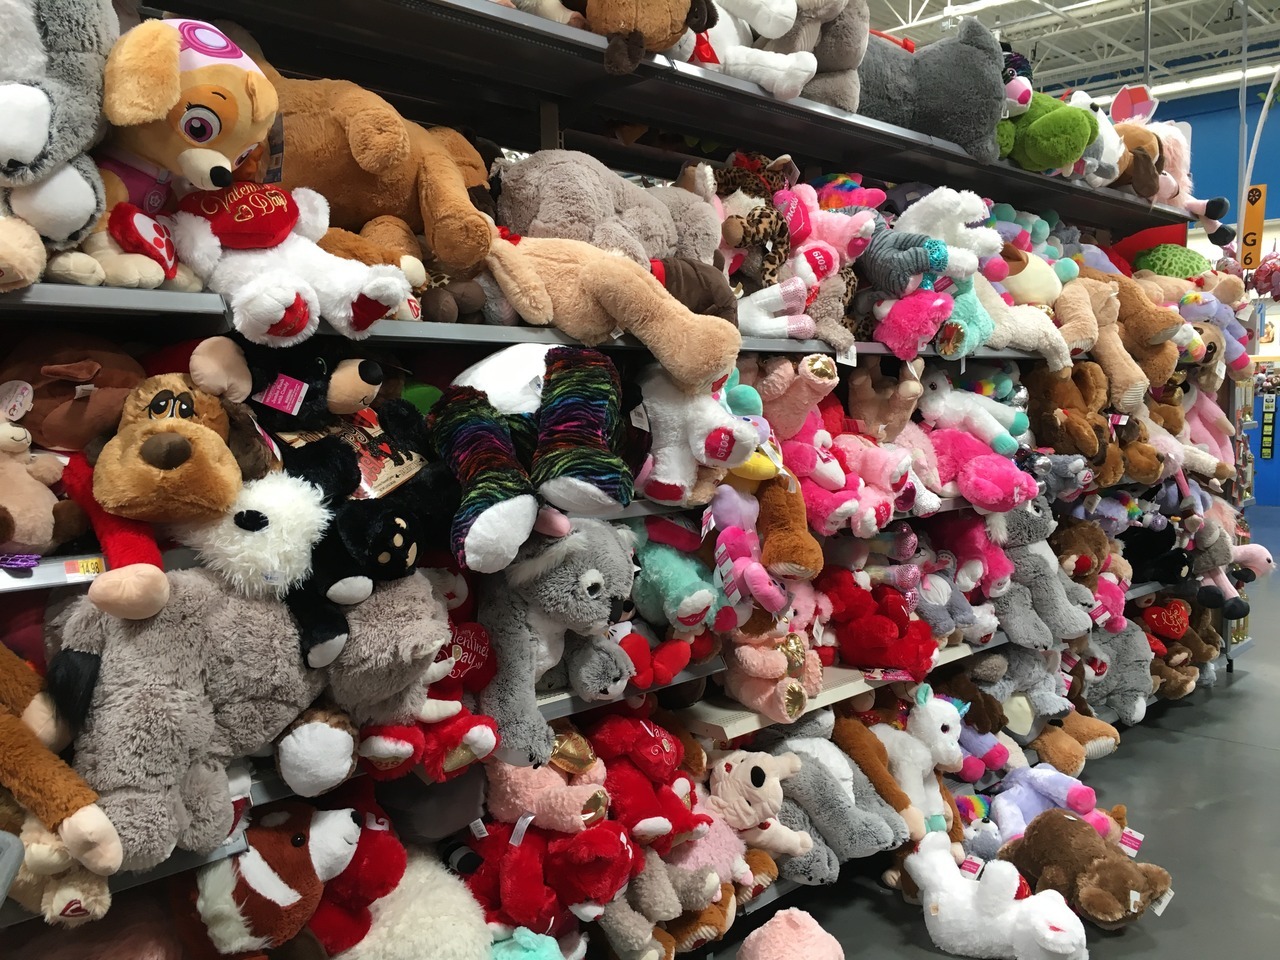 walmart stuffed animals valentines day